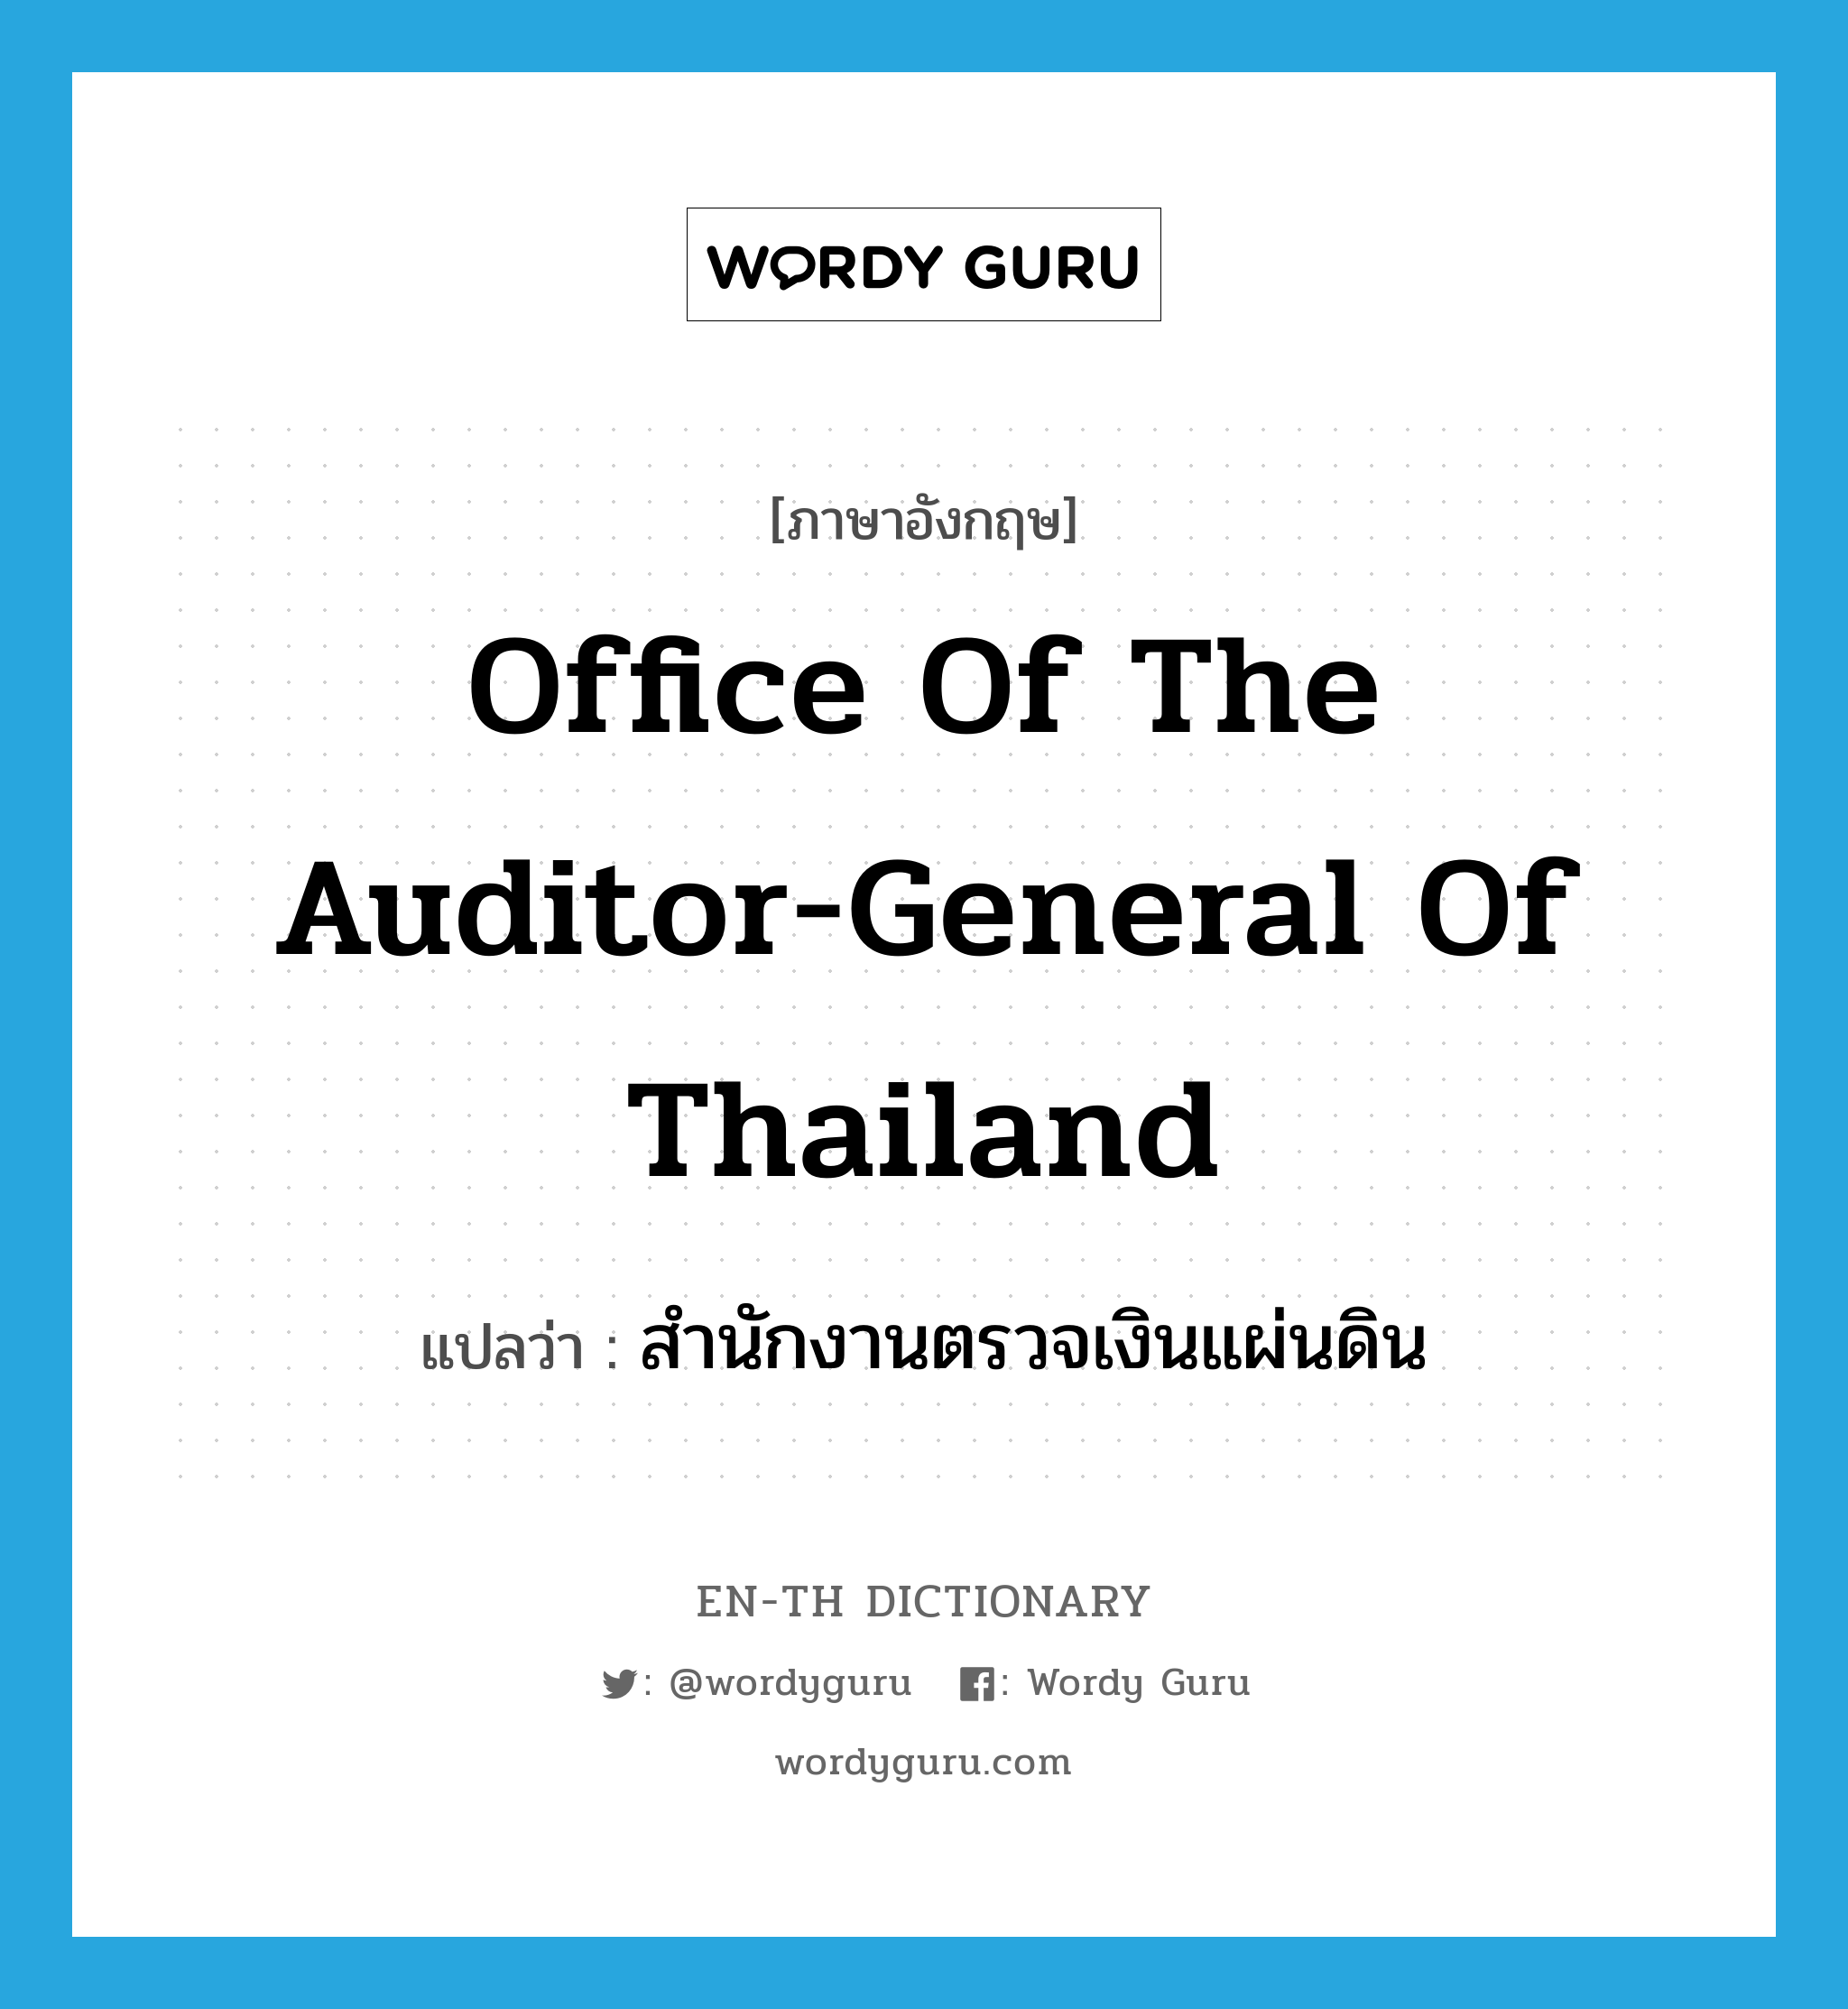 Office of the Auditor General of Thailand แปลว่า?, คำศัพท์ภาษาอังกฤษ Office of the Auditor-General of Thailand แปลว่า สำนักงานตรวจเงินแผ่นดิน ประเภท N หมวด N